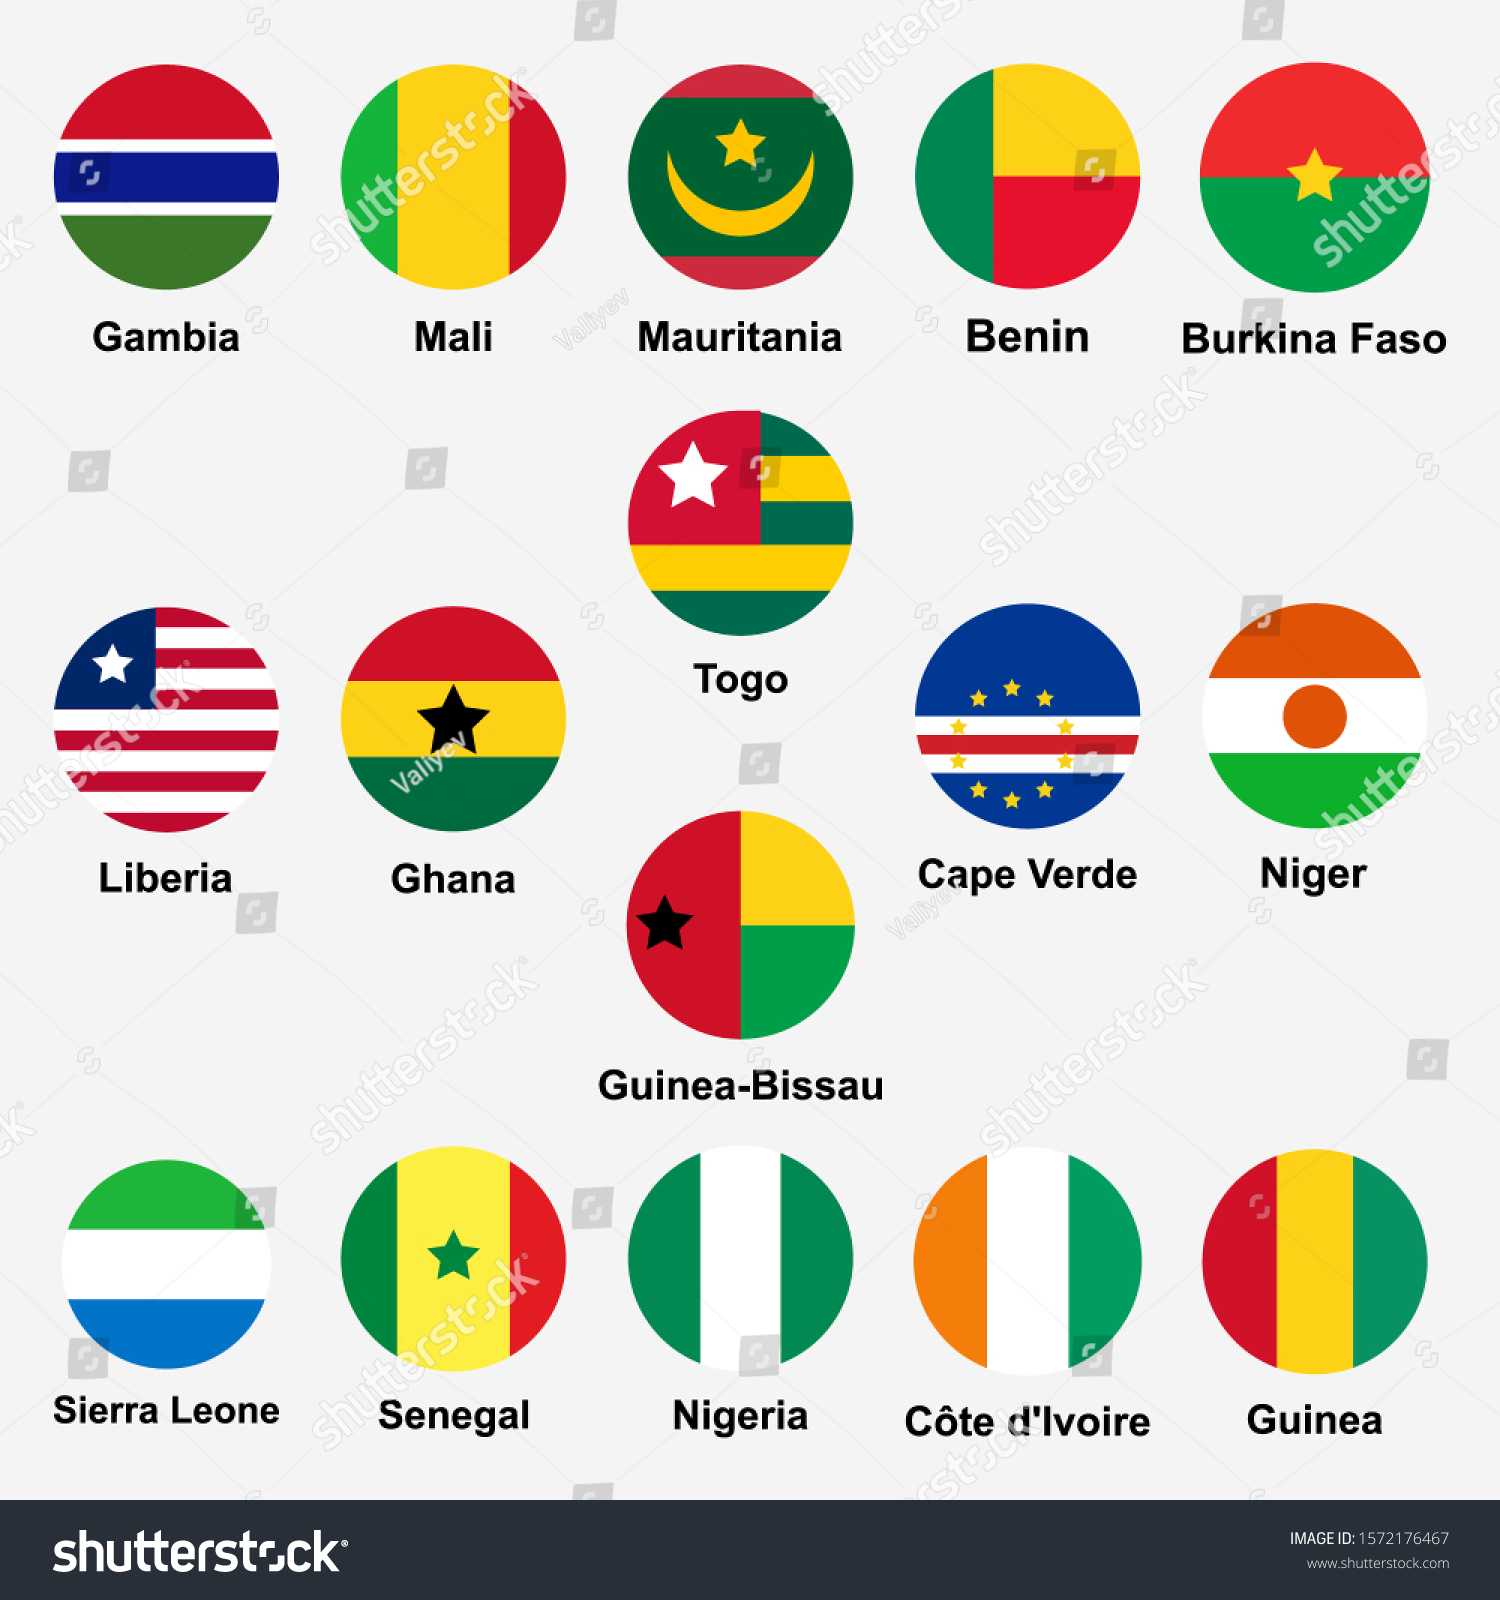 Western African Countries Flags Icon Set Vector De Stock Libre De Regalías 1572176467 3913